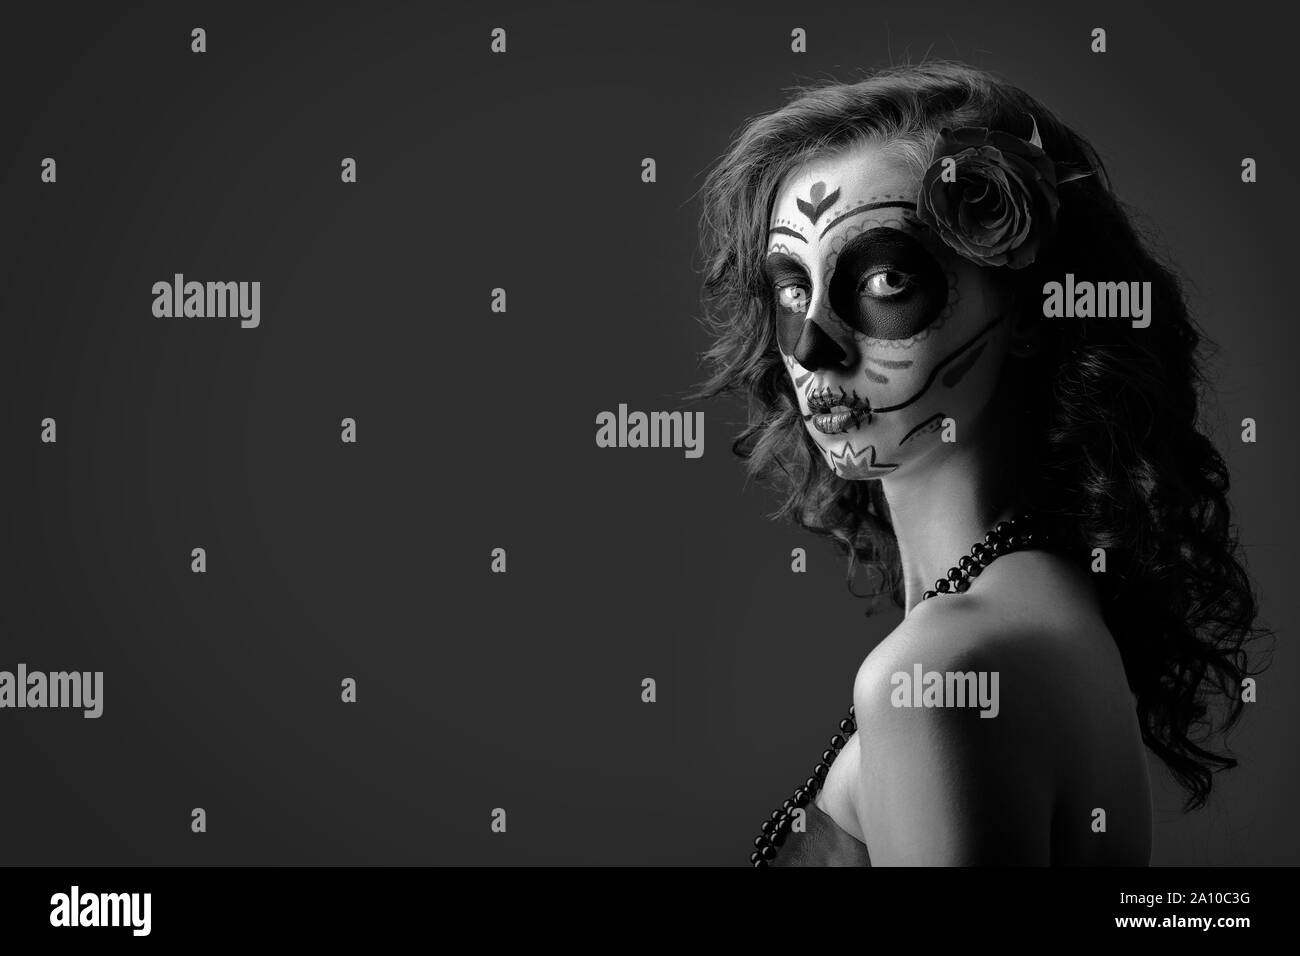 Jeune femme avec santa muerte maquillage sur fond sombre avec copie espace looking at camera, monochrome Banque D'Images